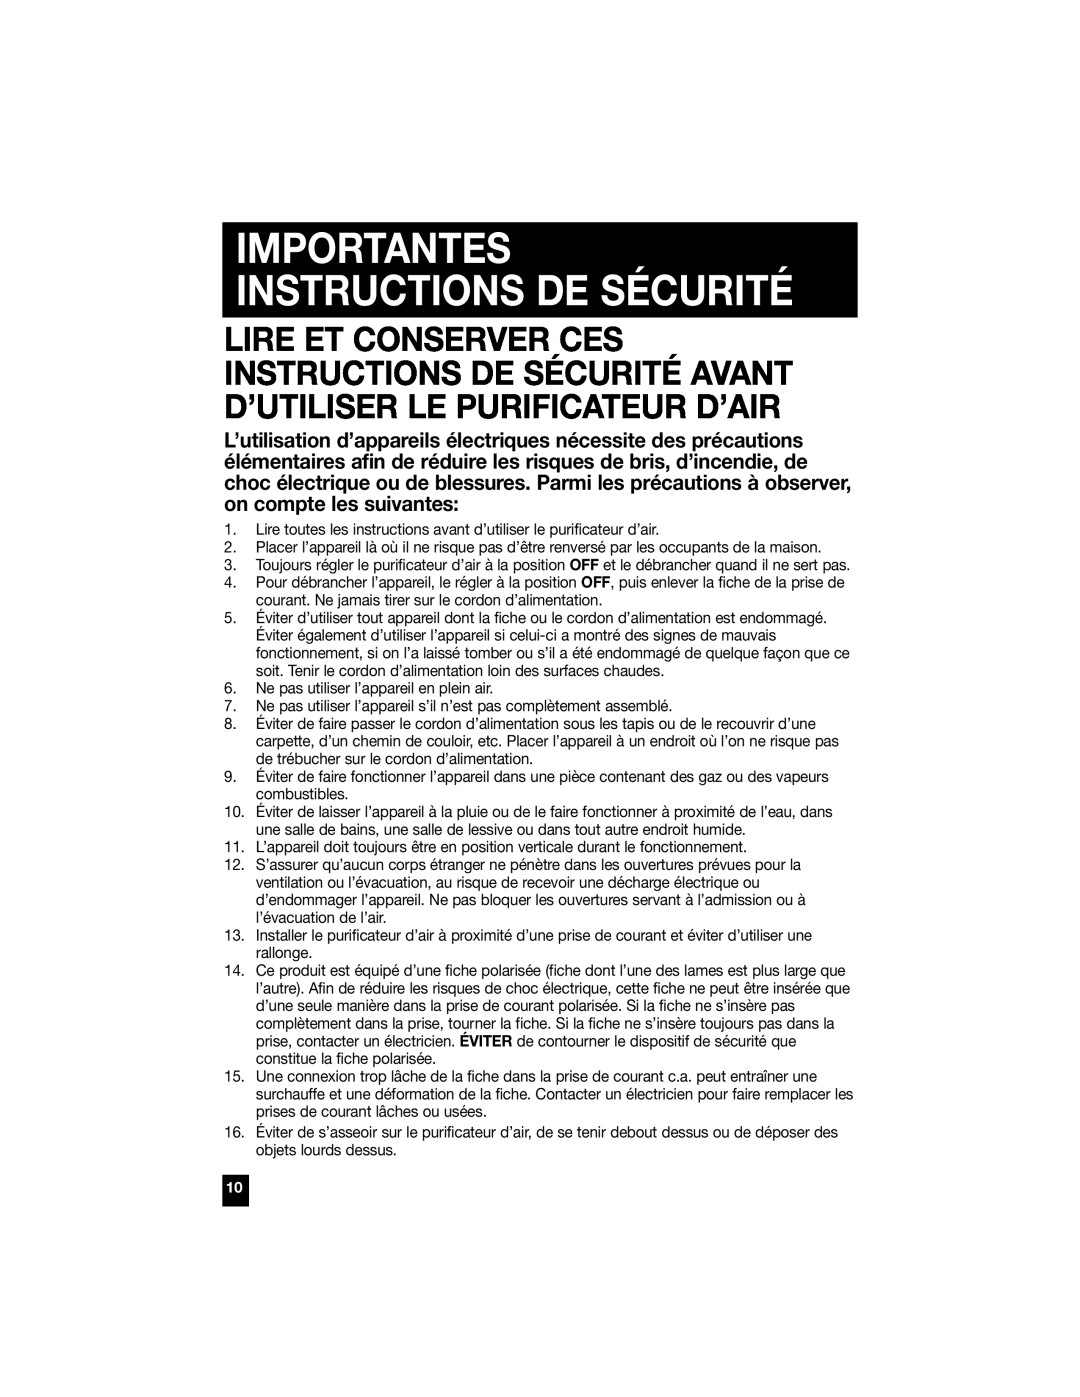 Honeywell 50100, 50300, 50200, 50150, 50250 manual Importantes Instructions De Sécurité 